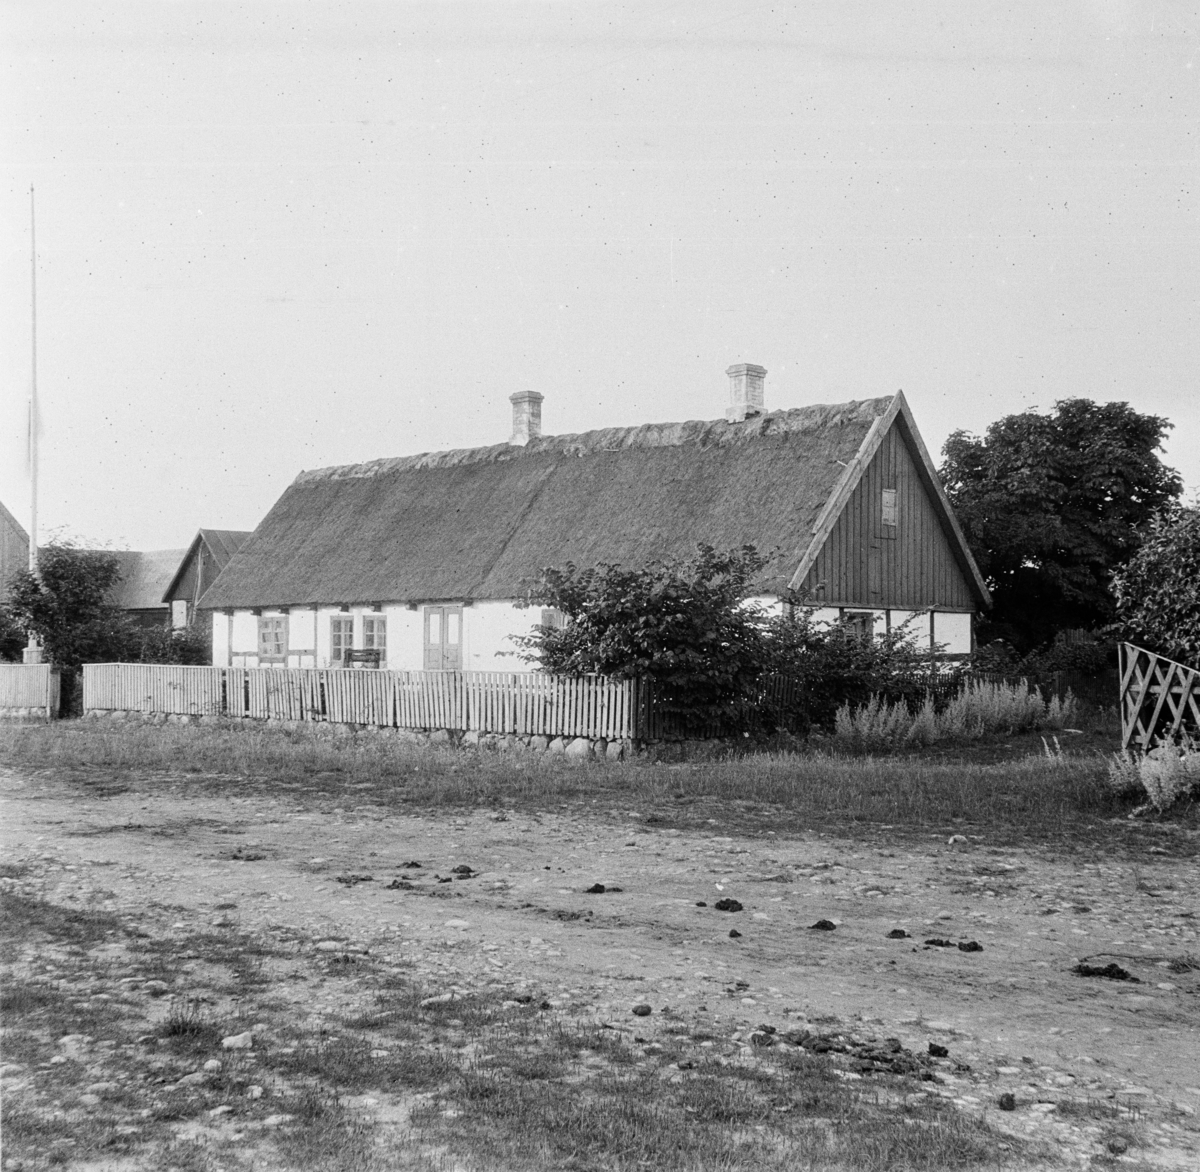 Domsten fiskeläge, Skåne
Exteriör

Svensk arkitektur: kyrkor, herrgårdar med mera fotograferade av Arkitekturminnesföreningen 1908-23.